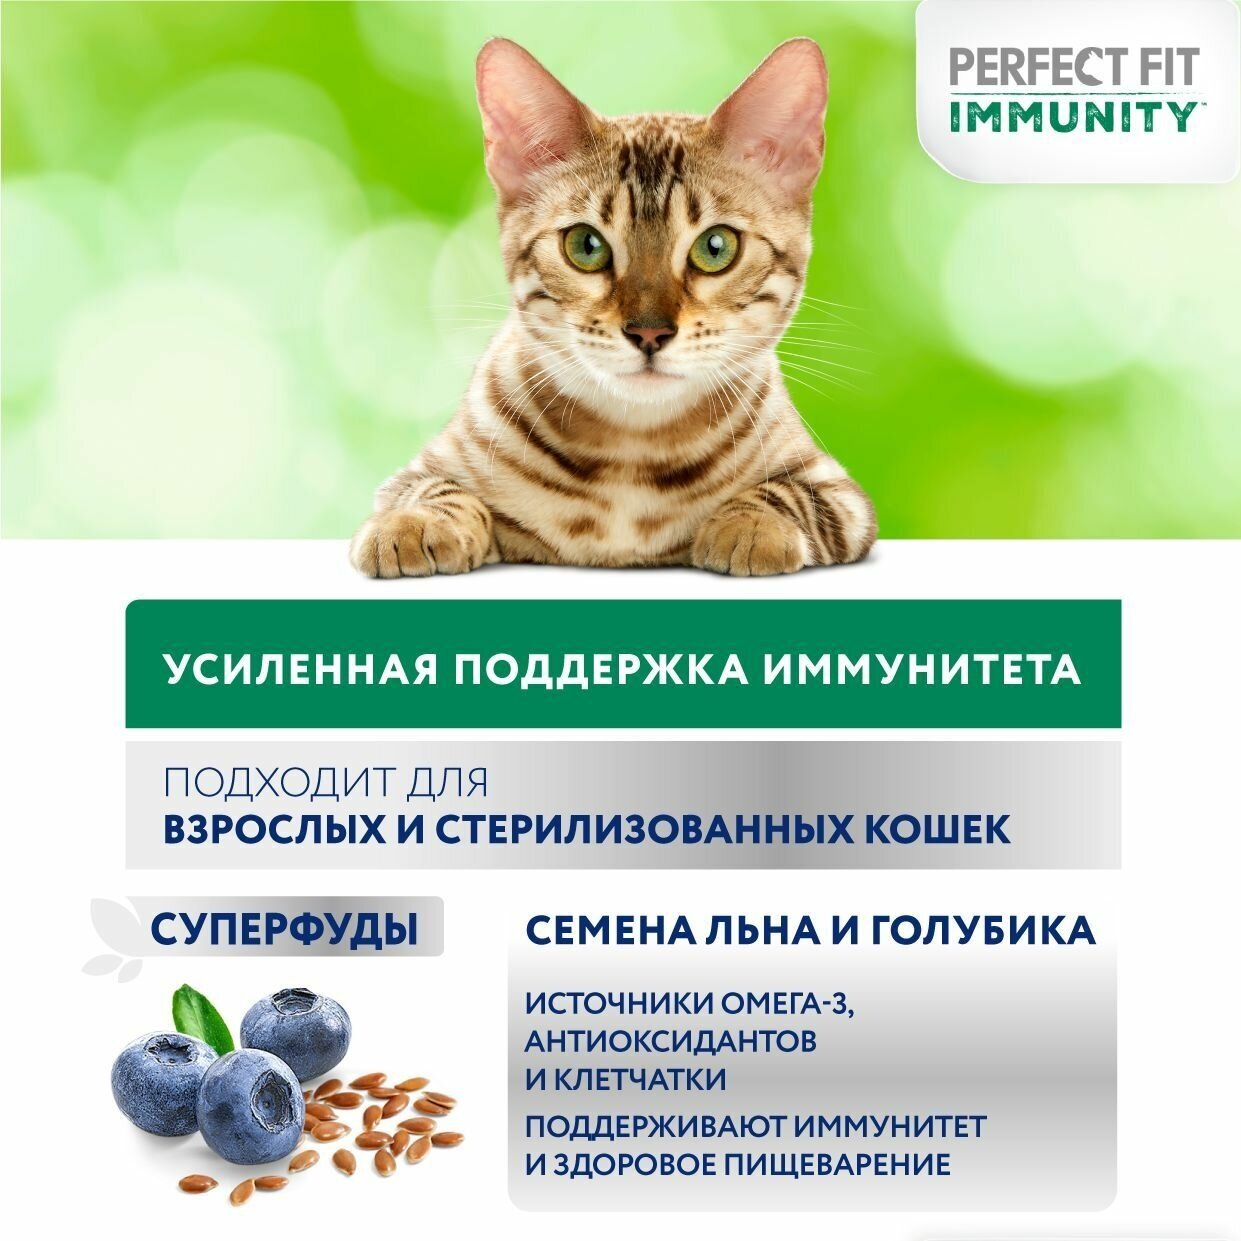 Perfect Fit Immunity корм для иммунитета кошек, говядина, семена льна, голубика, 580 гр. - фотография № 10